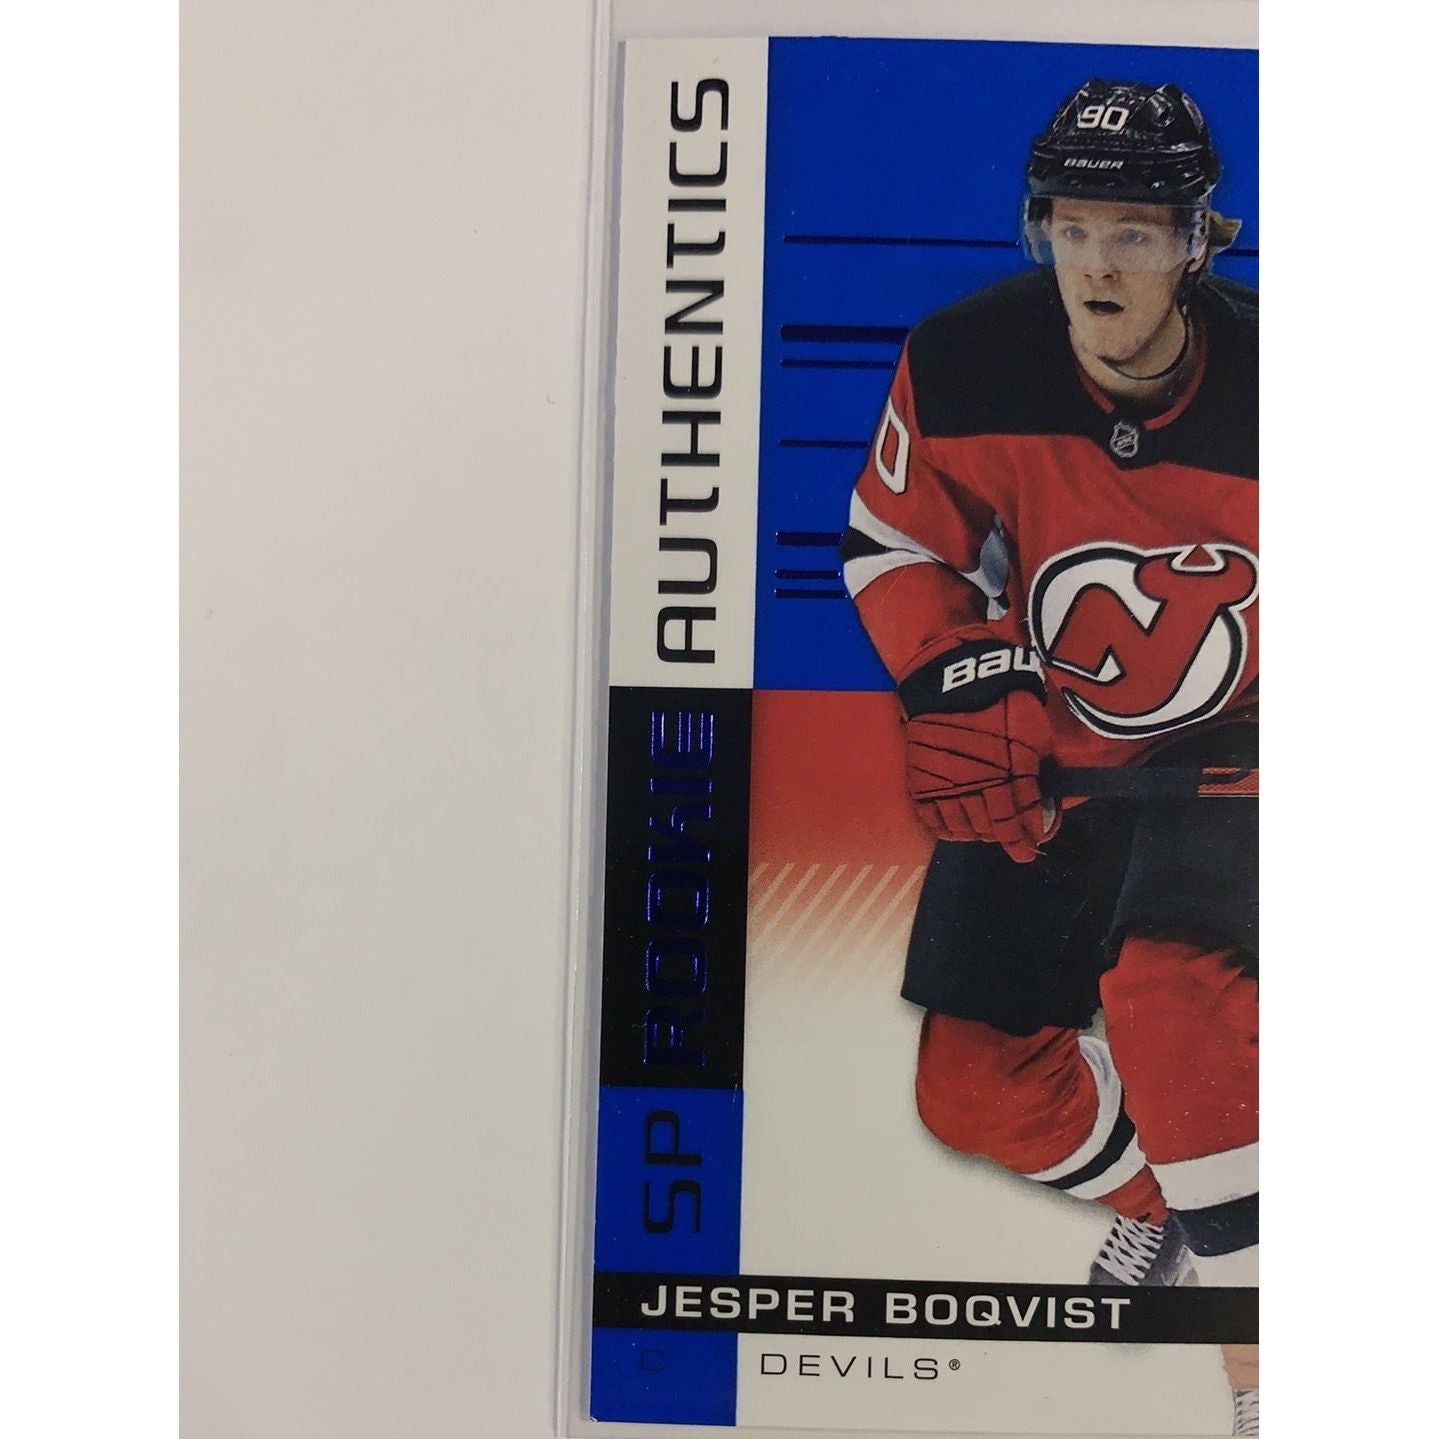  2019-20 SP Jesper Boqvist Rookie Authentics  Local Legends Cards & Collectibles